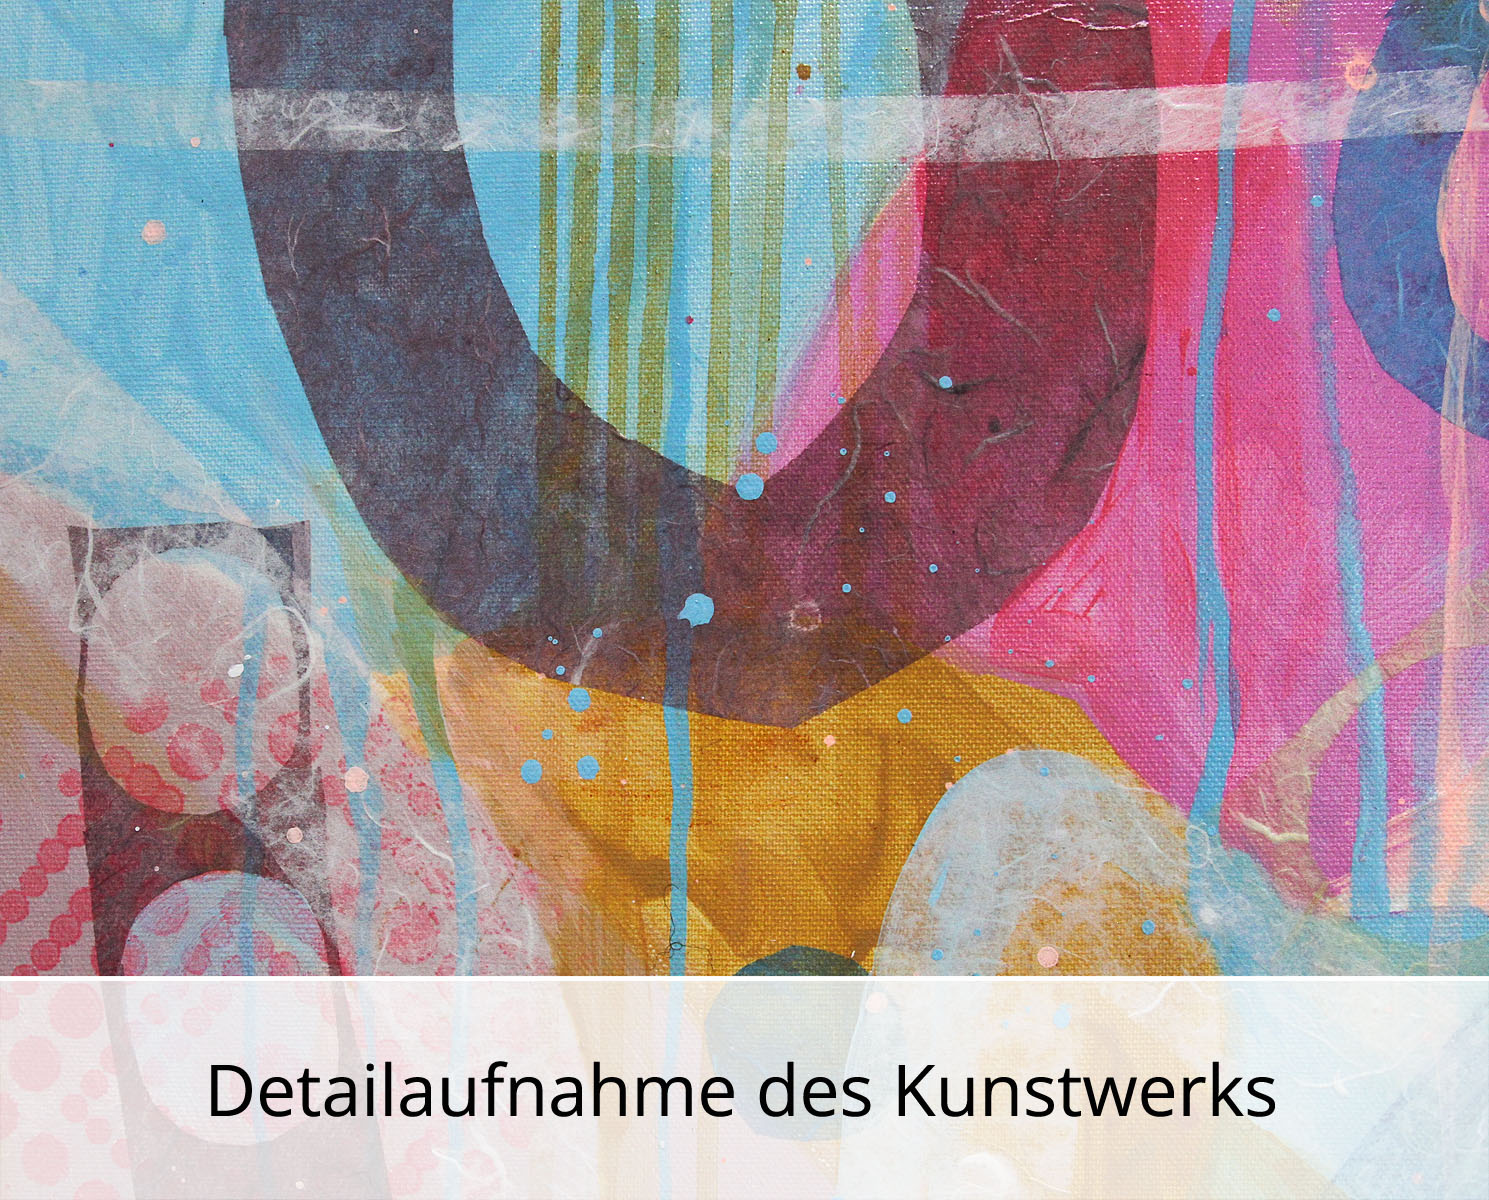 Abstrakte Malerei von Ewa Martens: "Himmlische Melodie", Original/Unikat